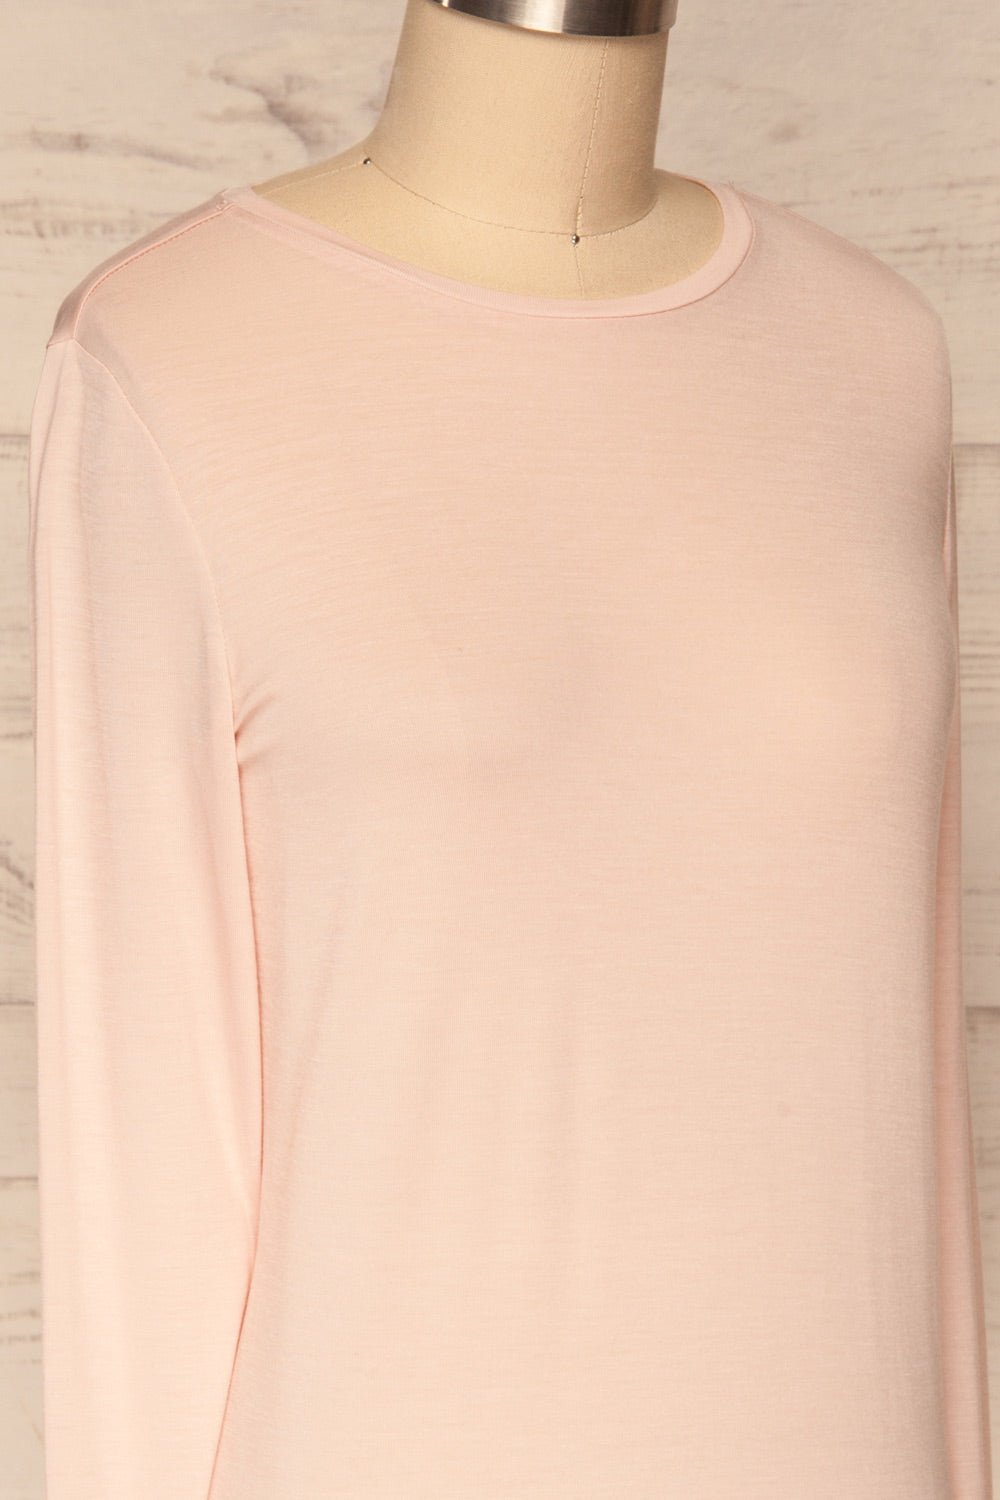 Huddinge Light Pink Long Sleeved T-Shirt side close up | La Petite Garçonne